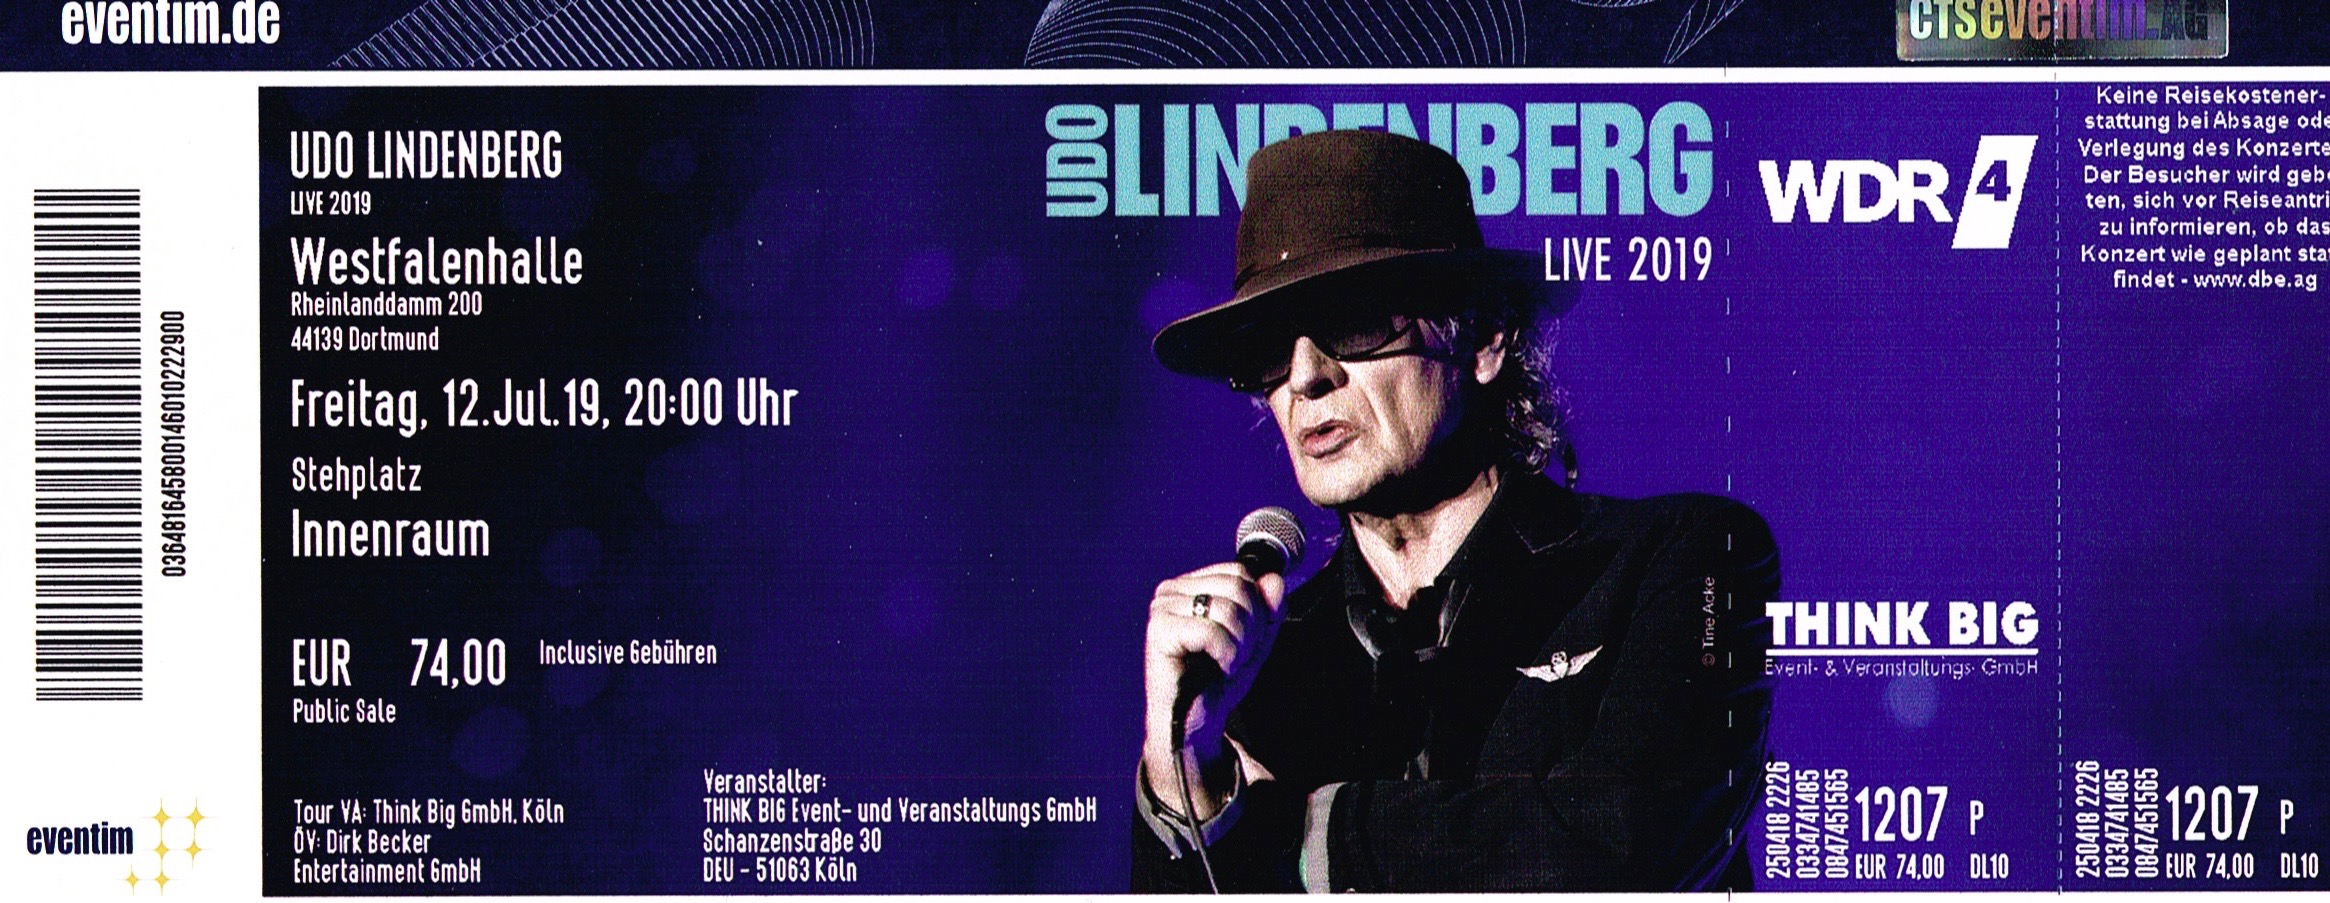 12.07.2019 - Udo Lindenberg - Live 2019 @Dortmund/Westfalenhalle